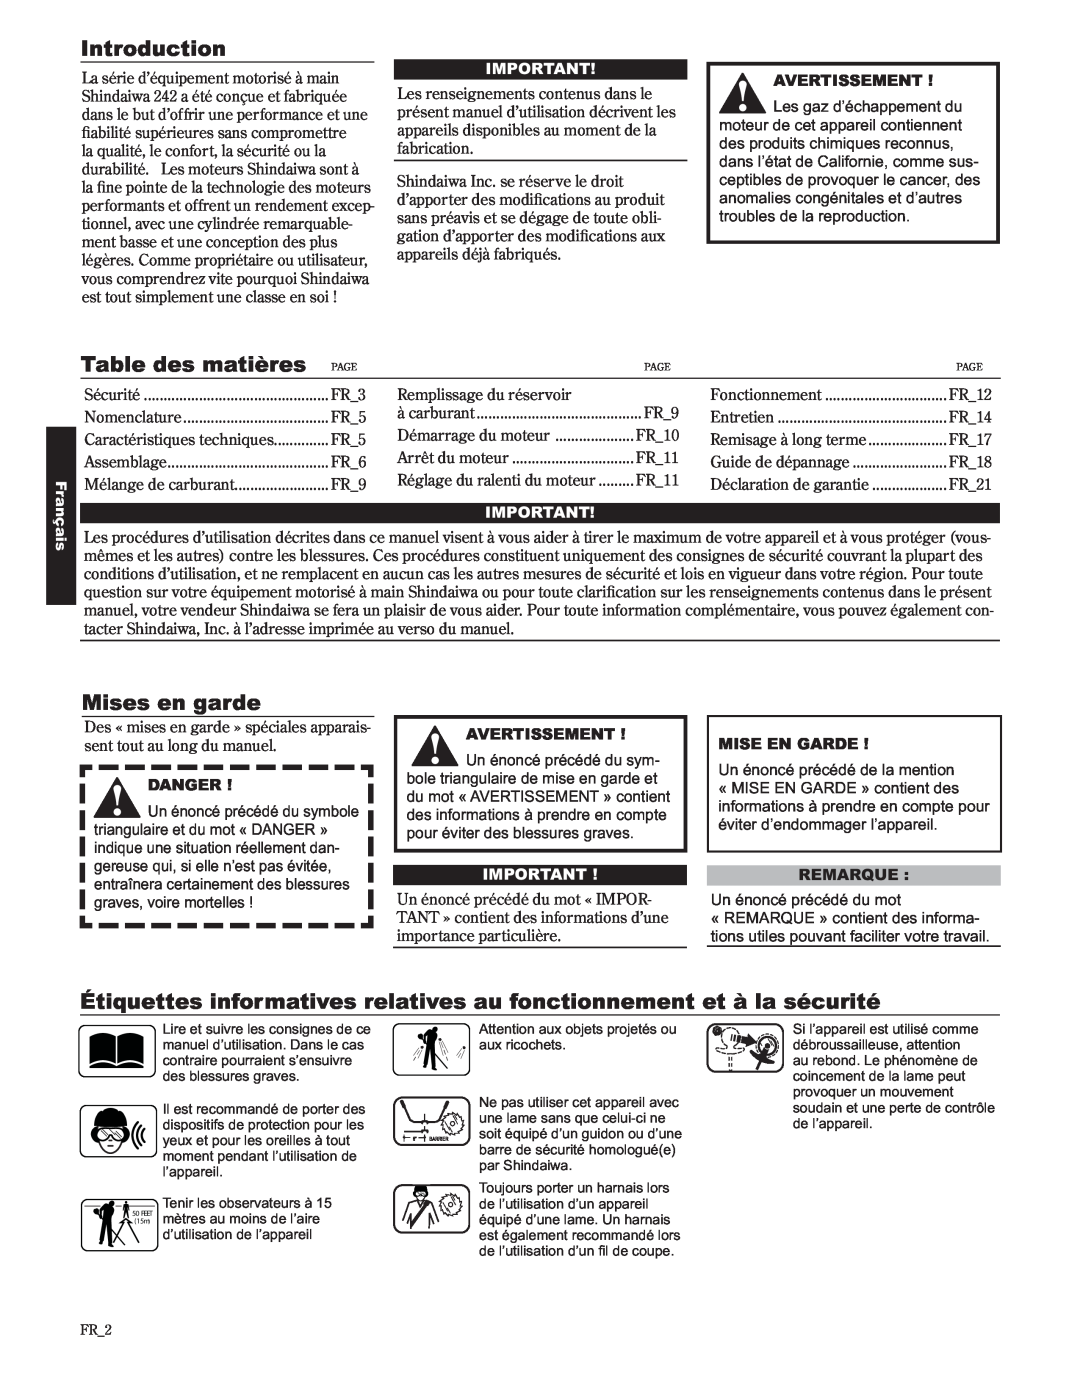 Shindaiwa 89302 Table des matières, Mises en garde, Étiquettes informatives relatives au fonctionnement et à la sécurité 